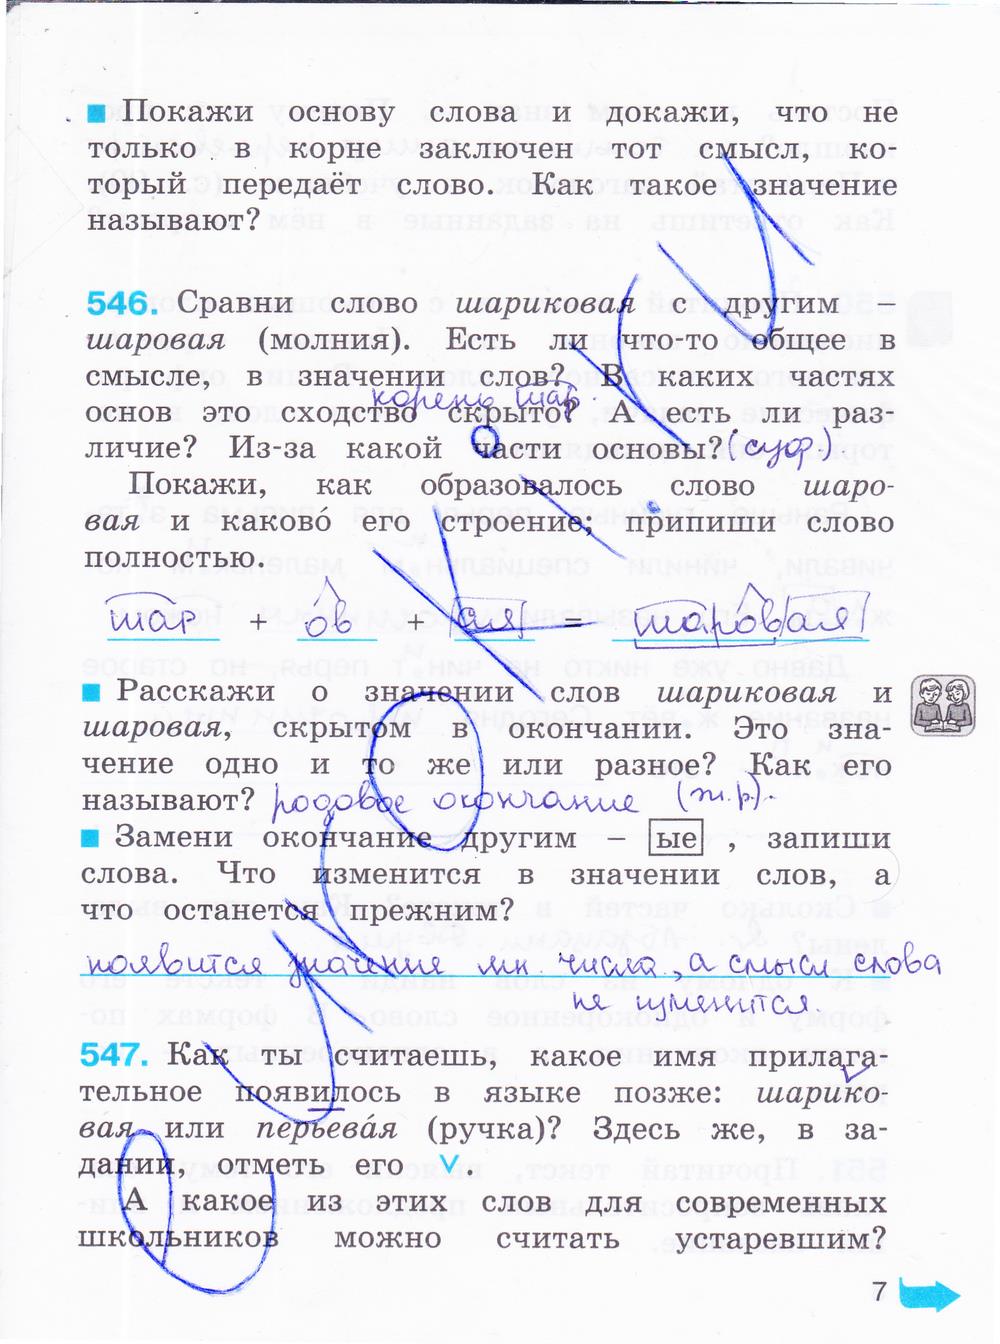 гдз 4 класс рабочая тетрадь часть 3 страница 7 русский язык Соловейчик, Кузьменко